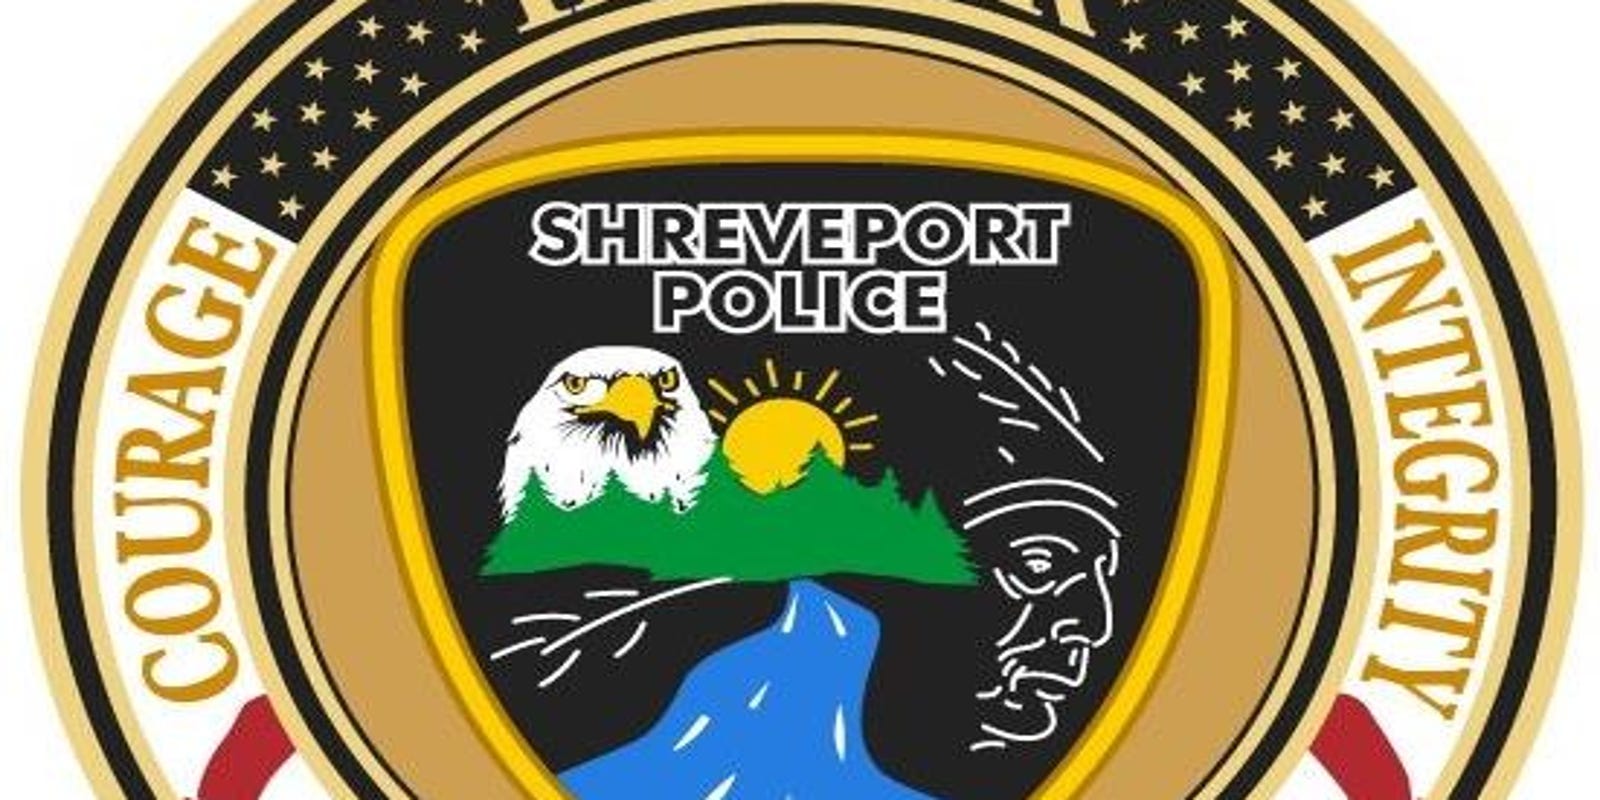 Shreveport police officer placed on leave, pending ...